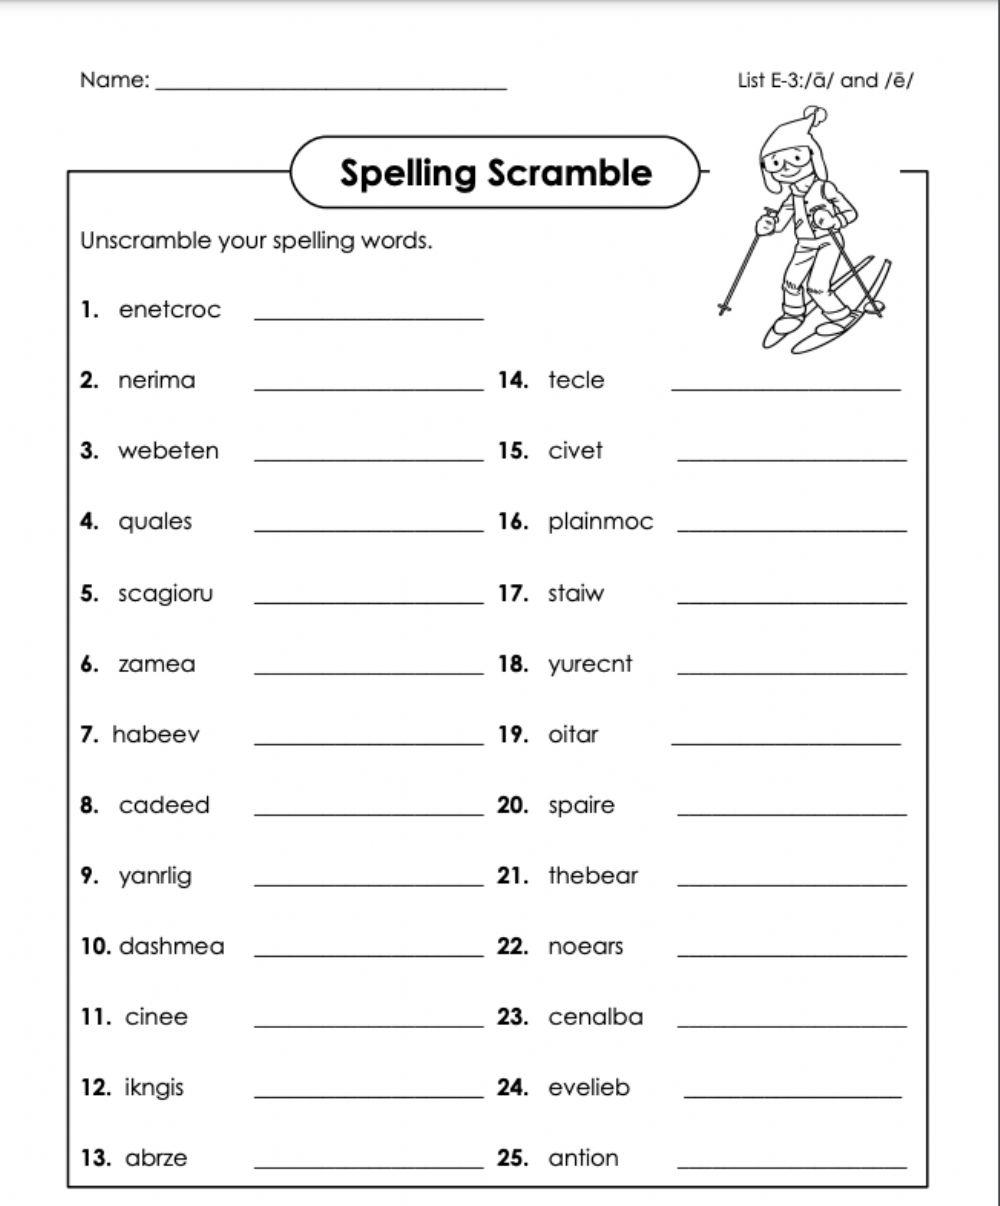 Word scramble e-3 6th grade